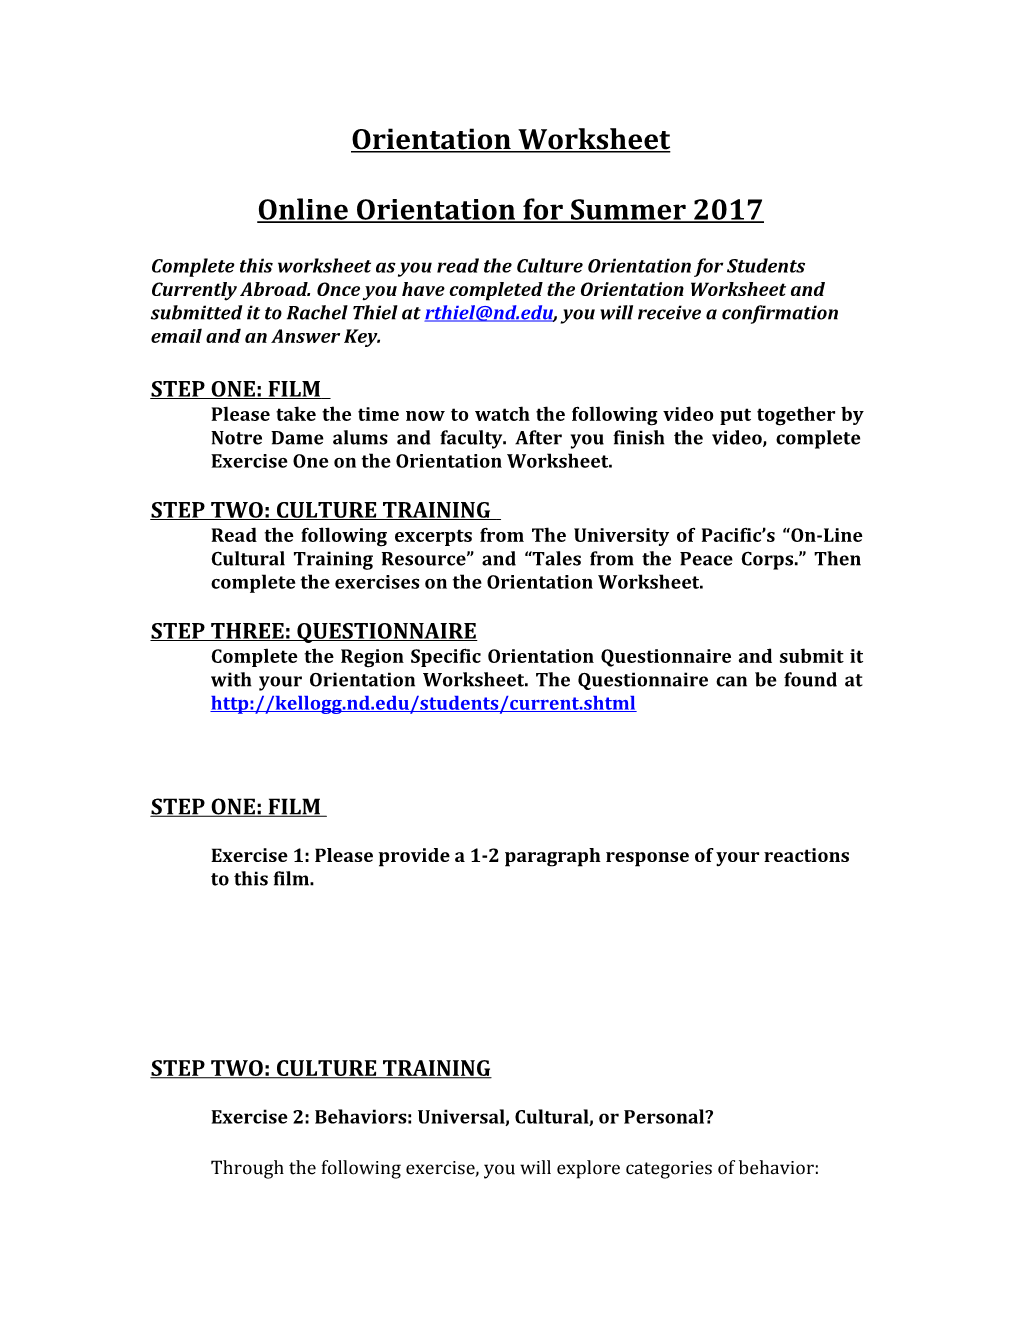 Online Orientation for Summer 2017